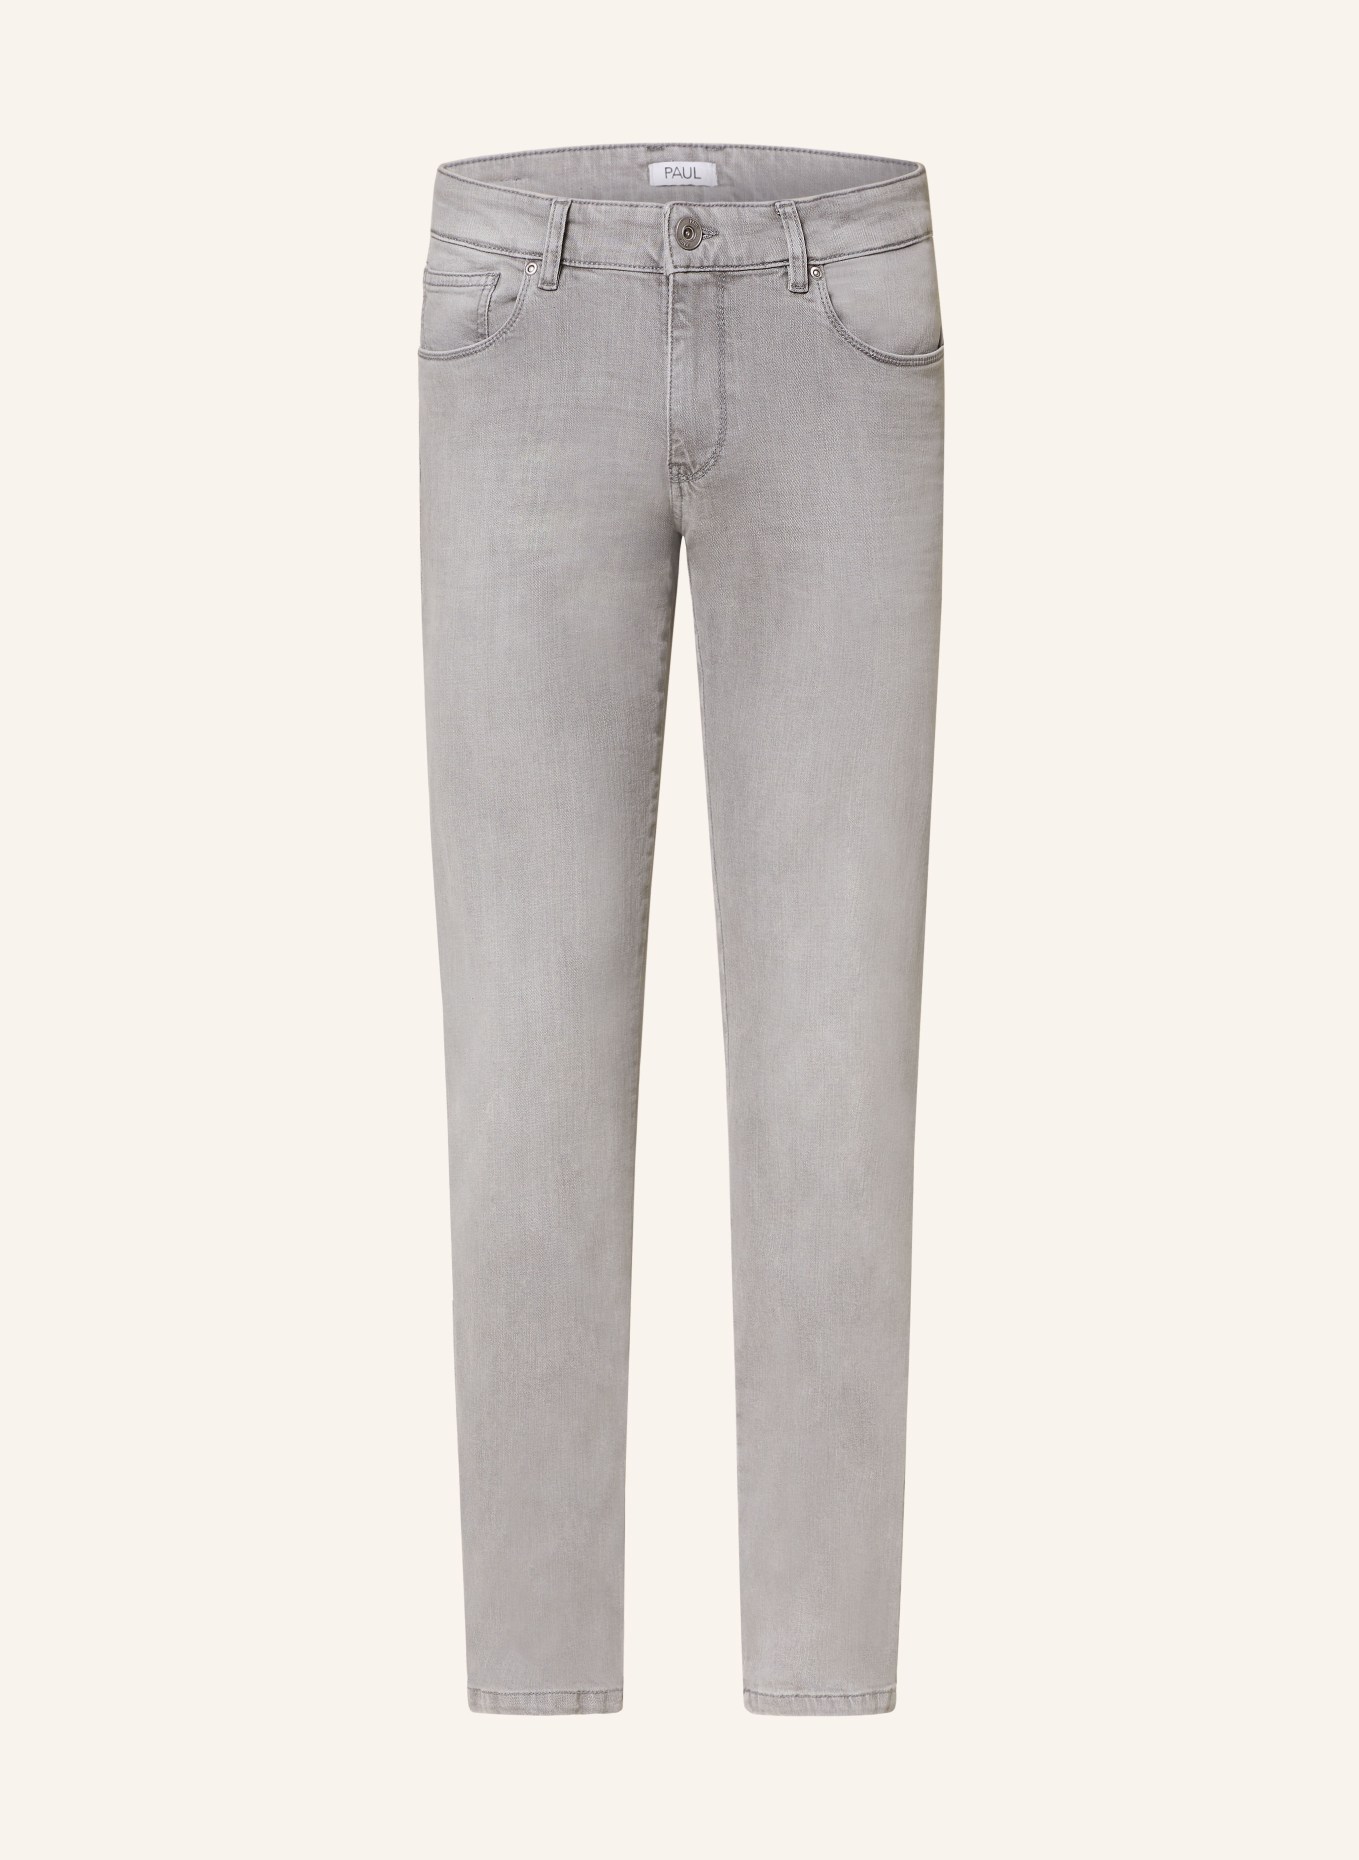 PAUL Jeans slim fit, Color: 6132 light grey (Image 1)